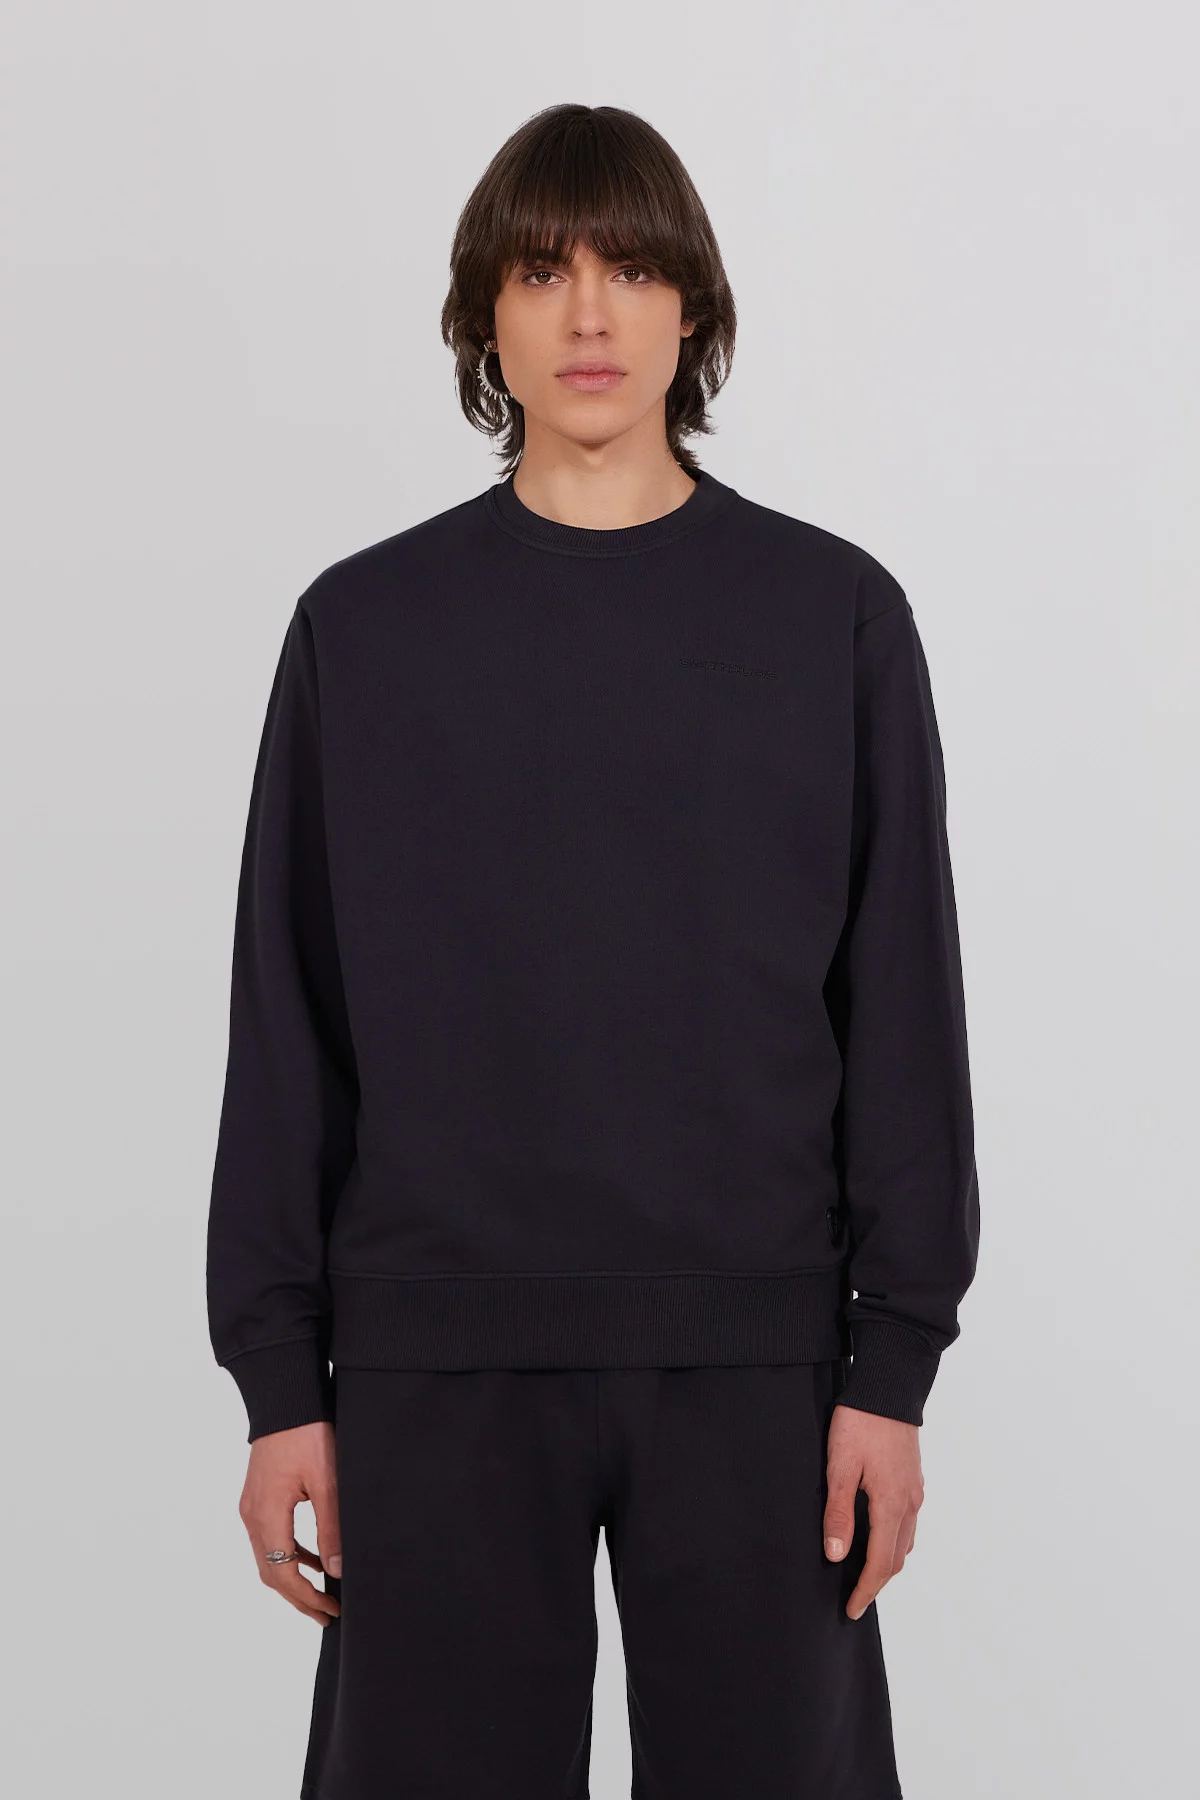 Guillaume Br unisex round neck sweatshirt